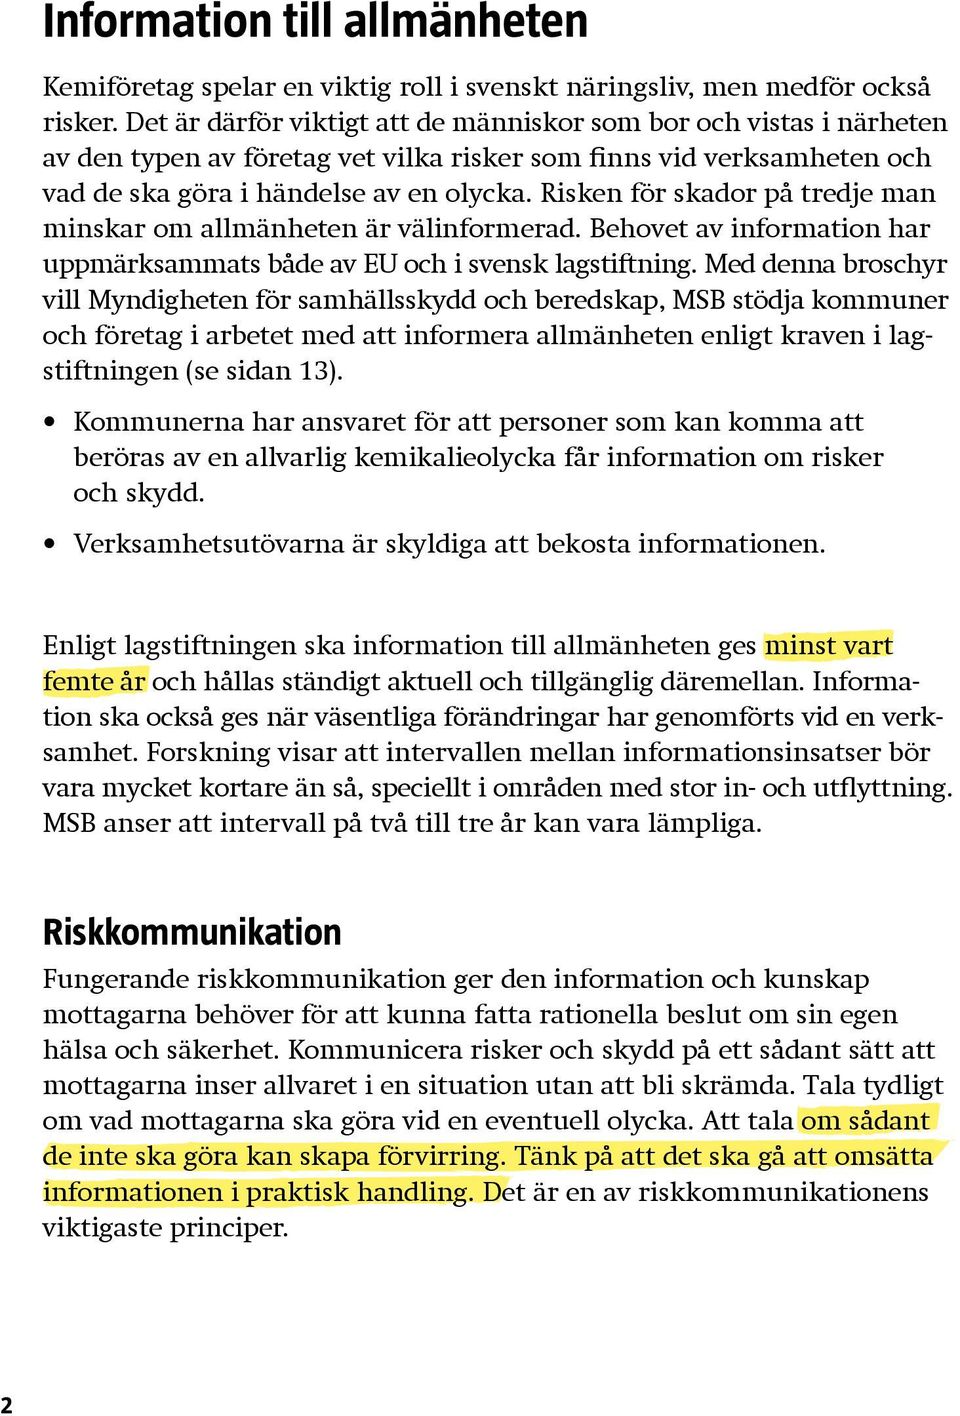 Risken för skador på tredje man minskar om allmänheten är välinformerad. Behovet av information har uppmärksammats både av EU och i svensk lagstiftning.